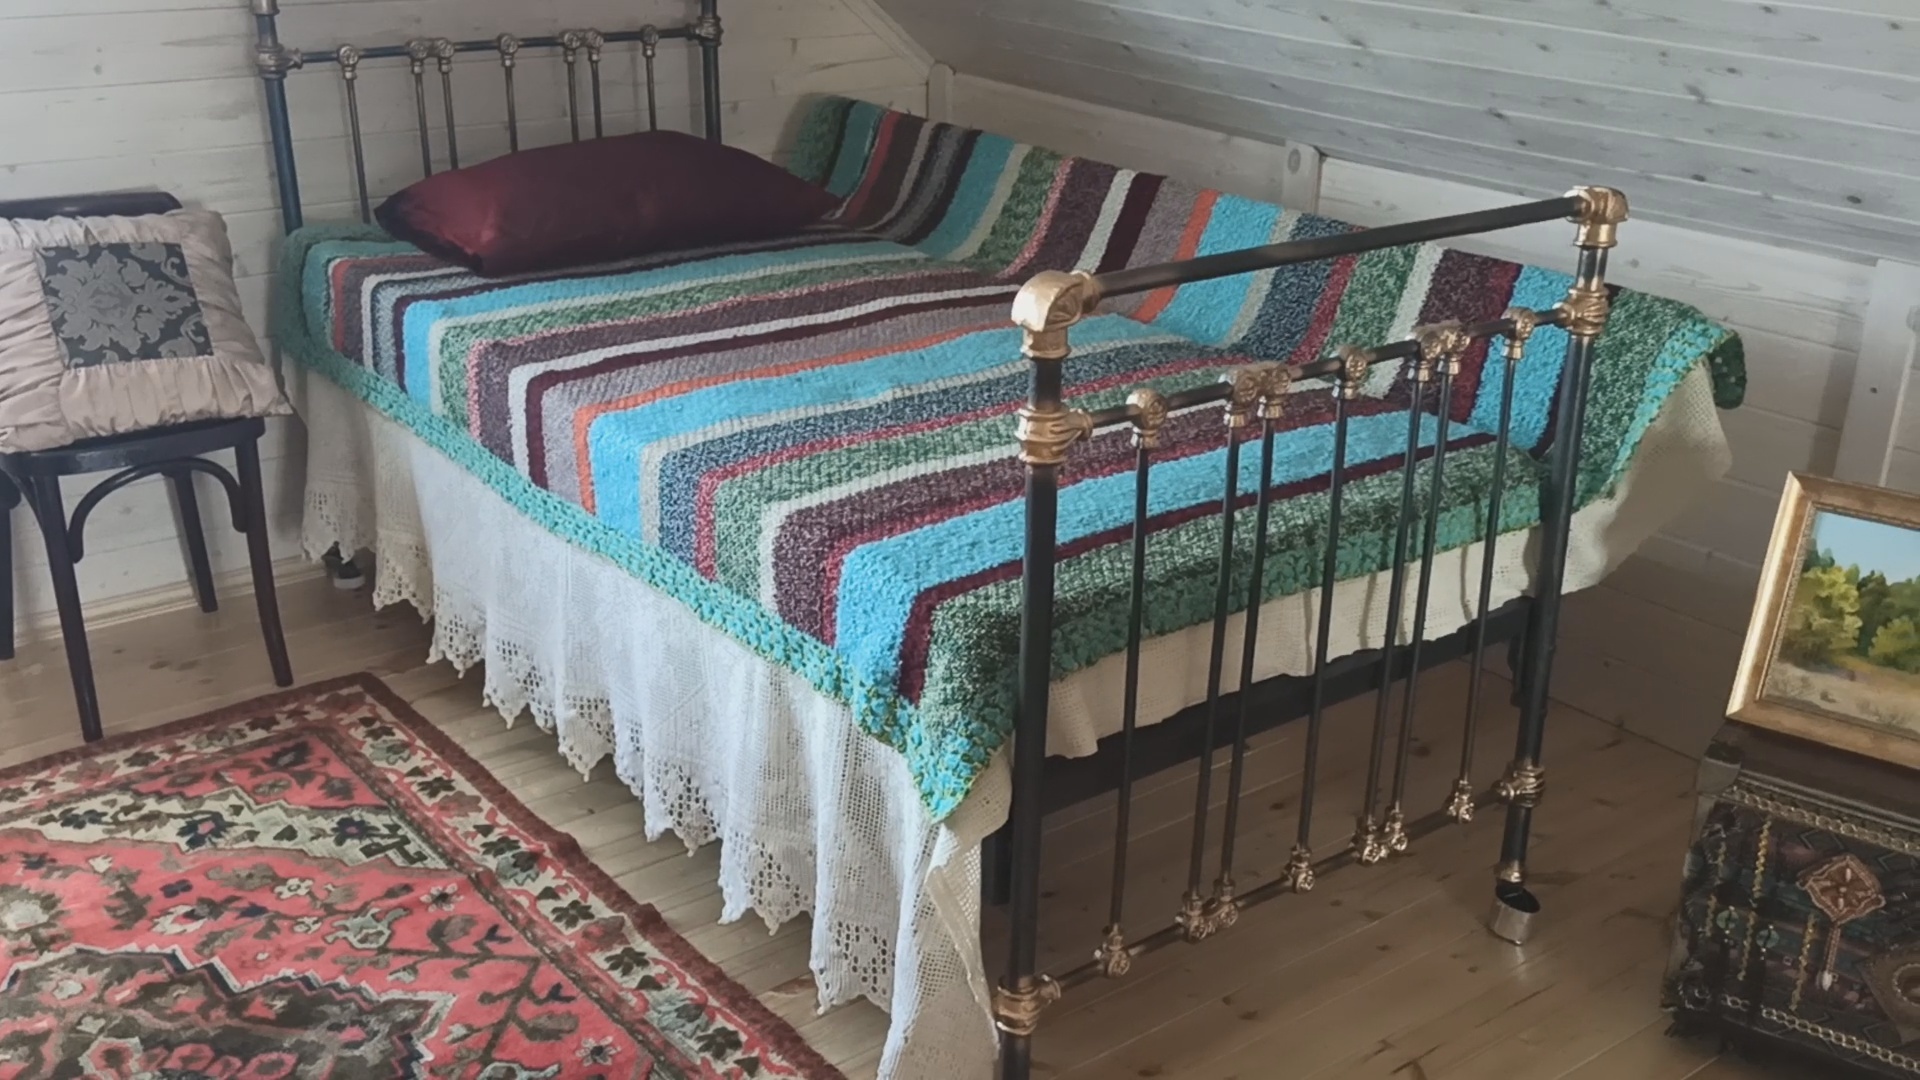 советские железные кровати в интерьере